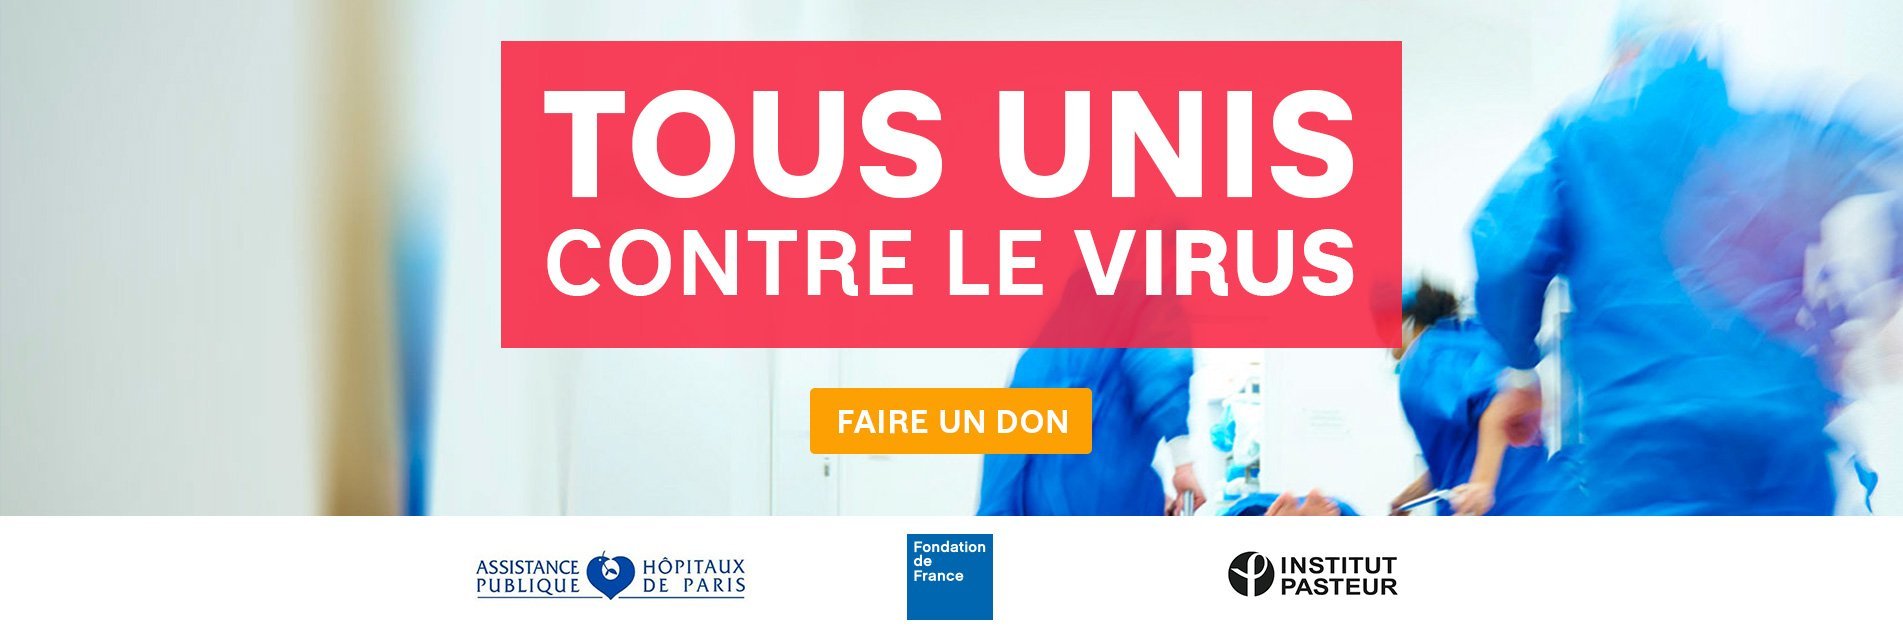 Coronavirus : la Fondation de France lance un appel à la solidarité pour aider les soignants, les chercheurs et les plus fragiles